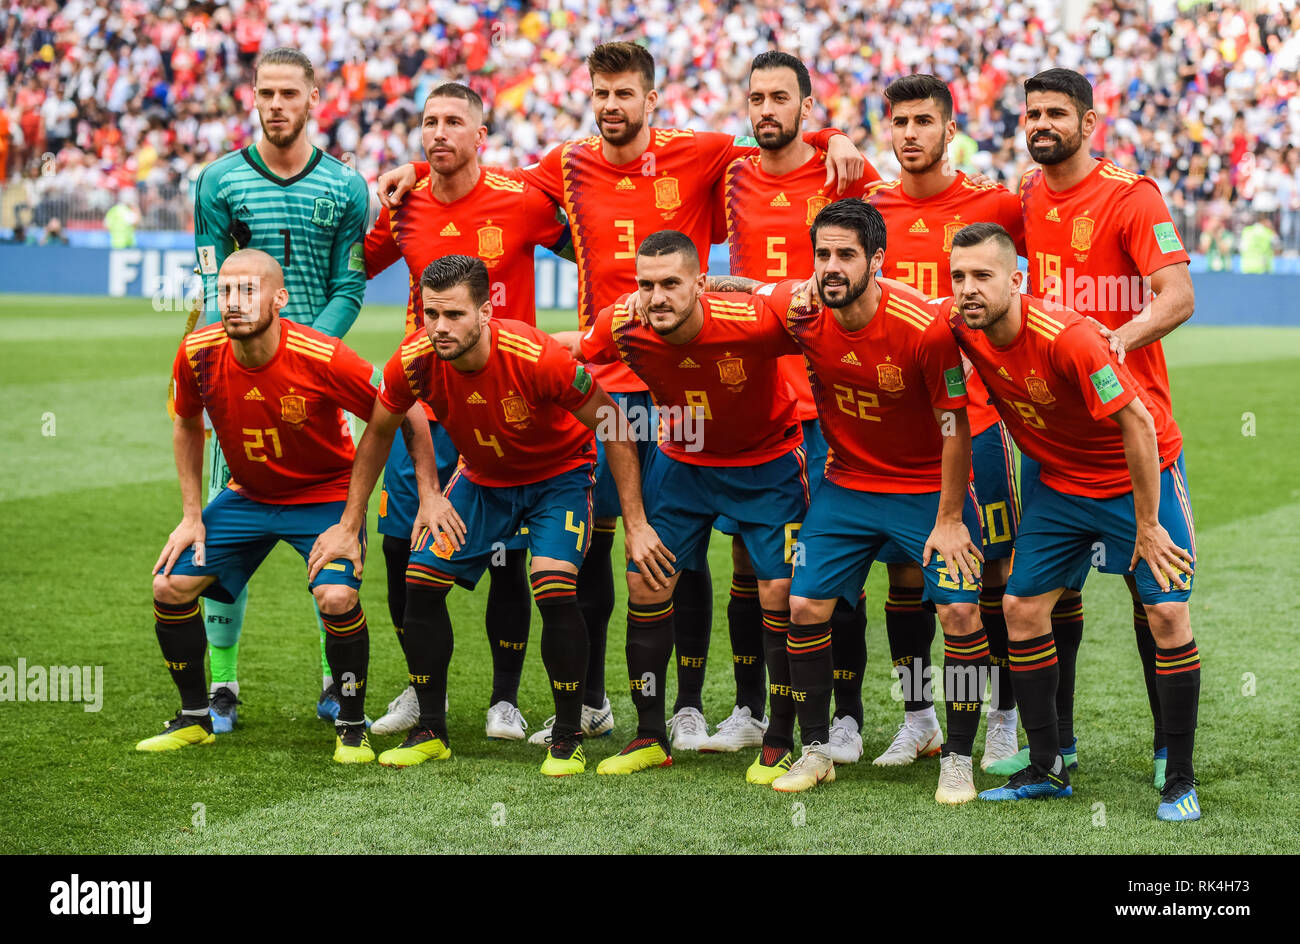 Moskau Russland Juli 1 2018 Spanien Nationalmannschaft Vor Der Fifa Fussball Weltmeisterschaft 2018 Runde 16 Spanien Vs Russland Stockfotografie Alamy